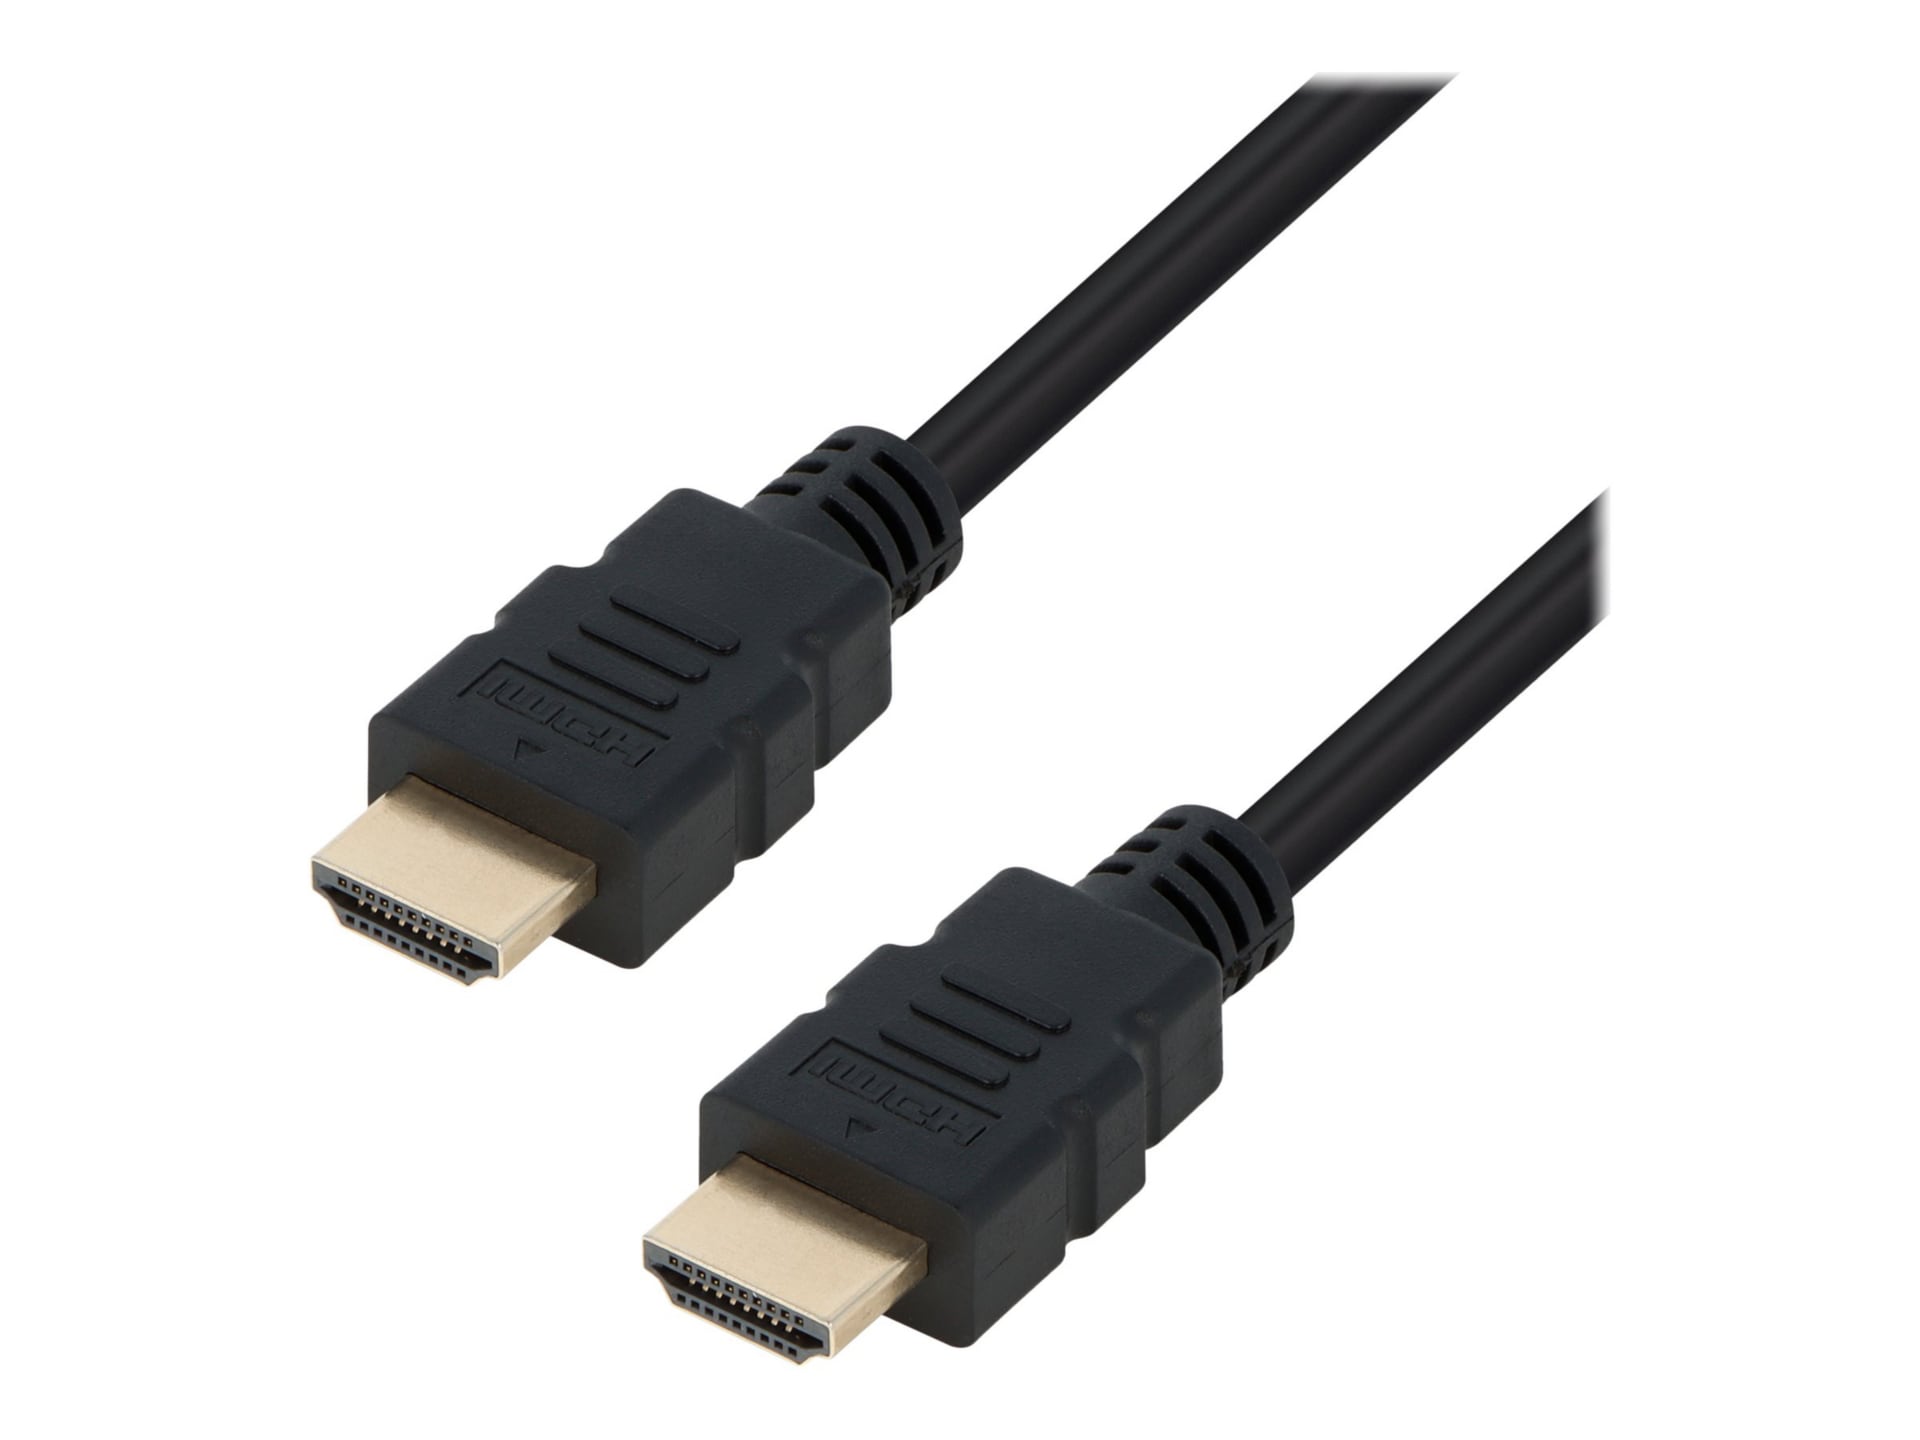 VisionTek HDMI 3 Foot / 1 Meter Cable (M/M)